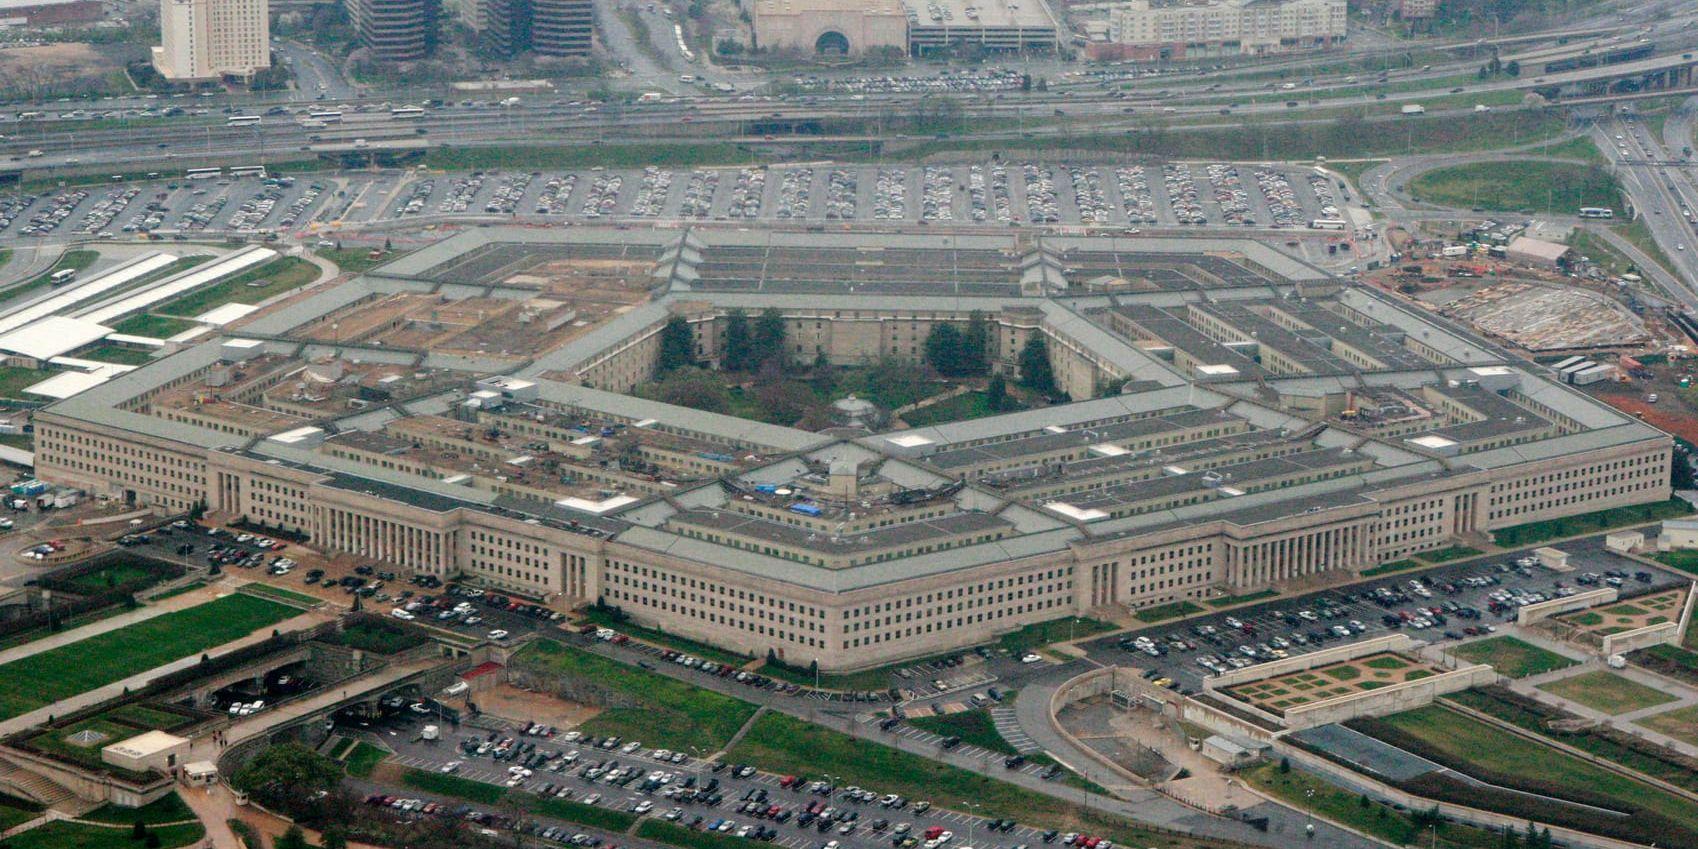 USA:s försvarshögkvarter Pentagon. Arkivbild.